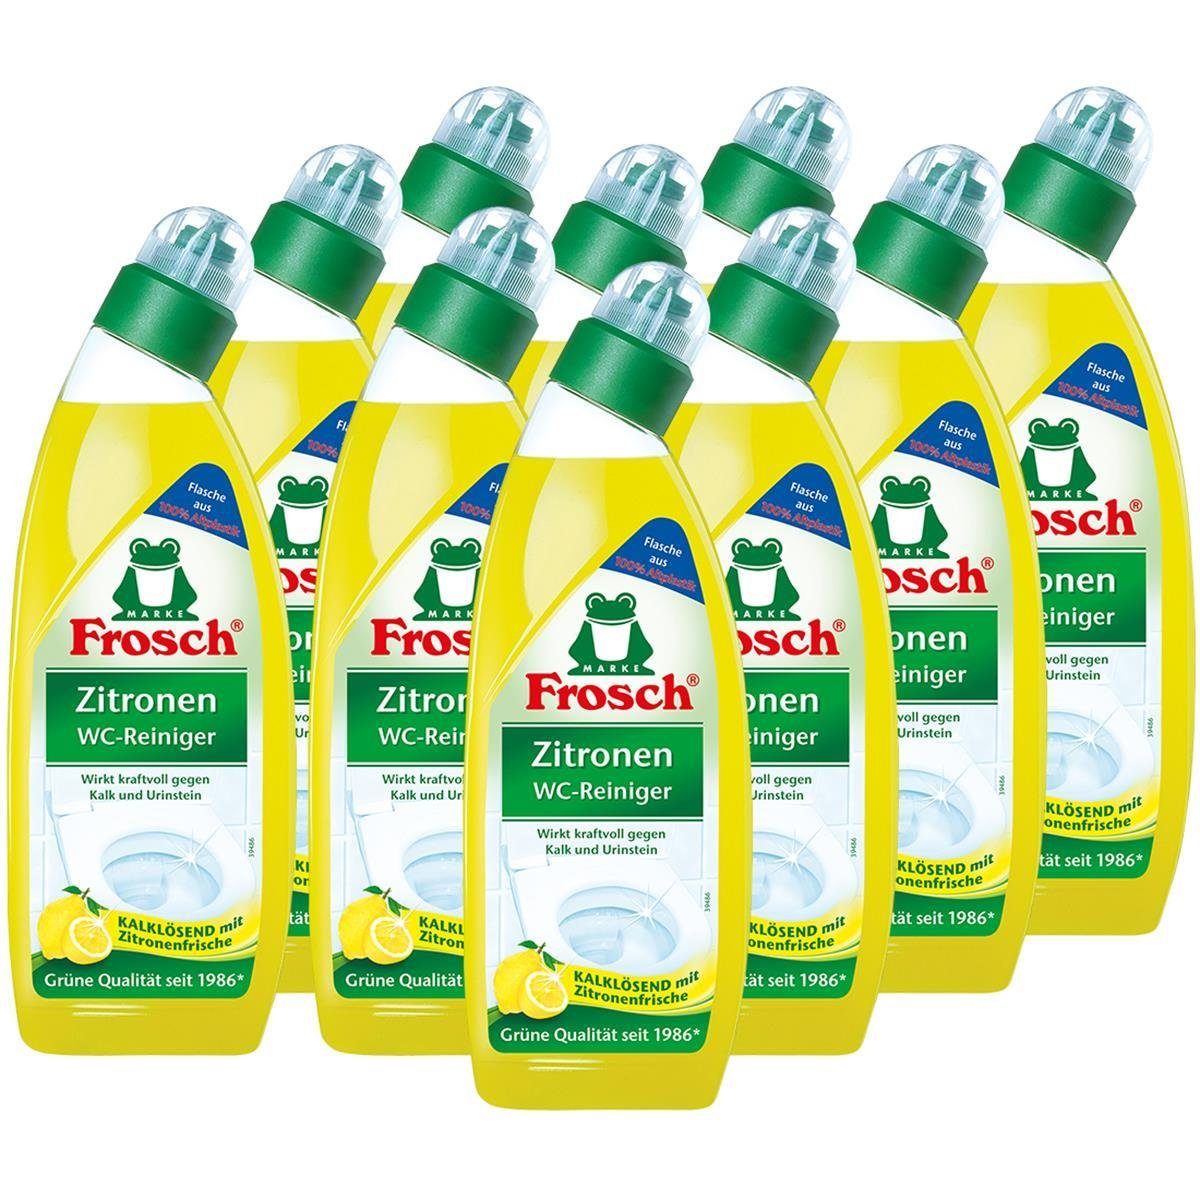 FROSCH 10x Frosch ml WC-Reiniger mit 750 Kalklösend WC-Reiniger - Zitrone Zitronen